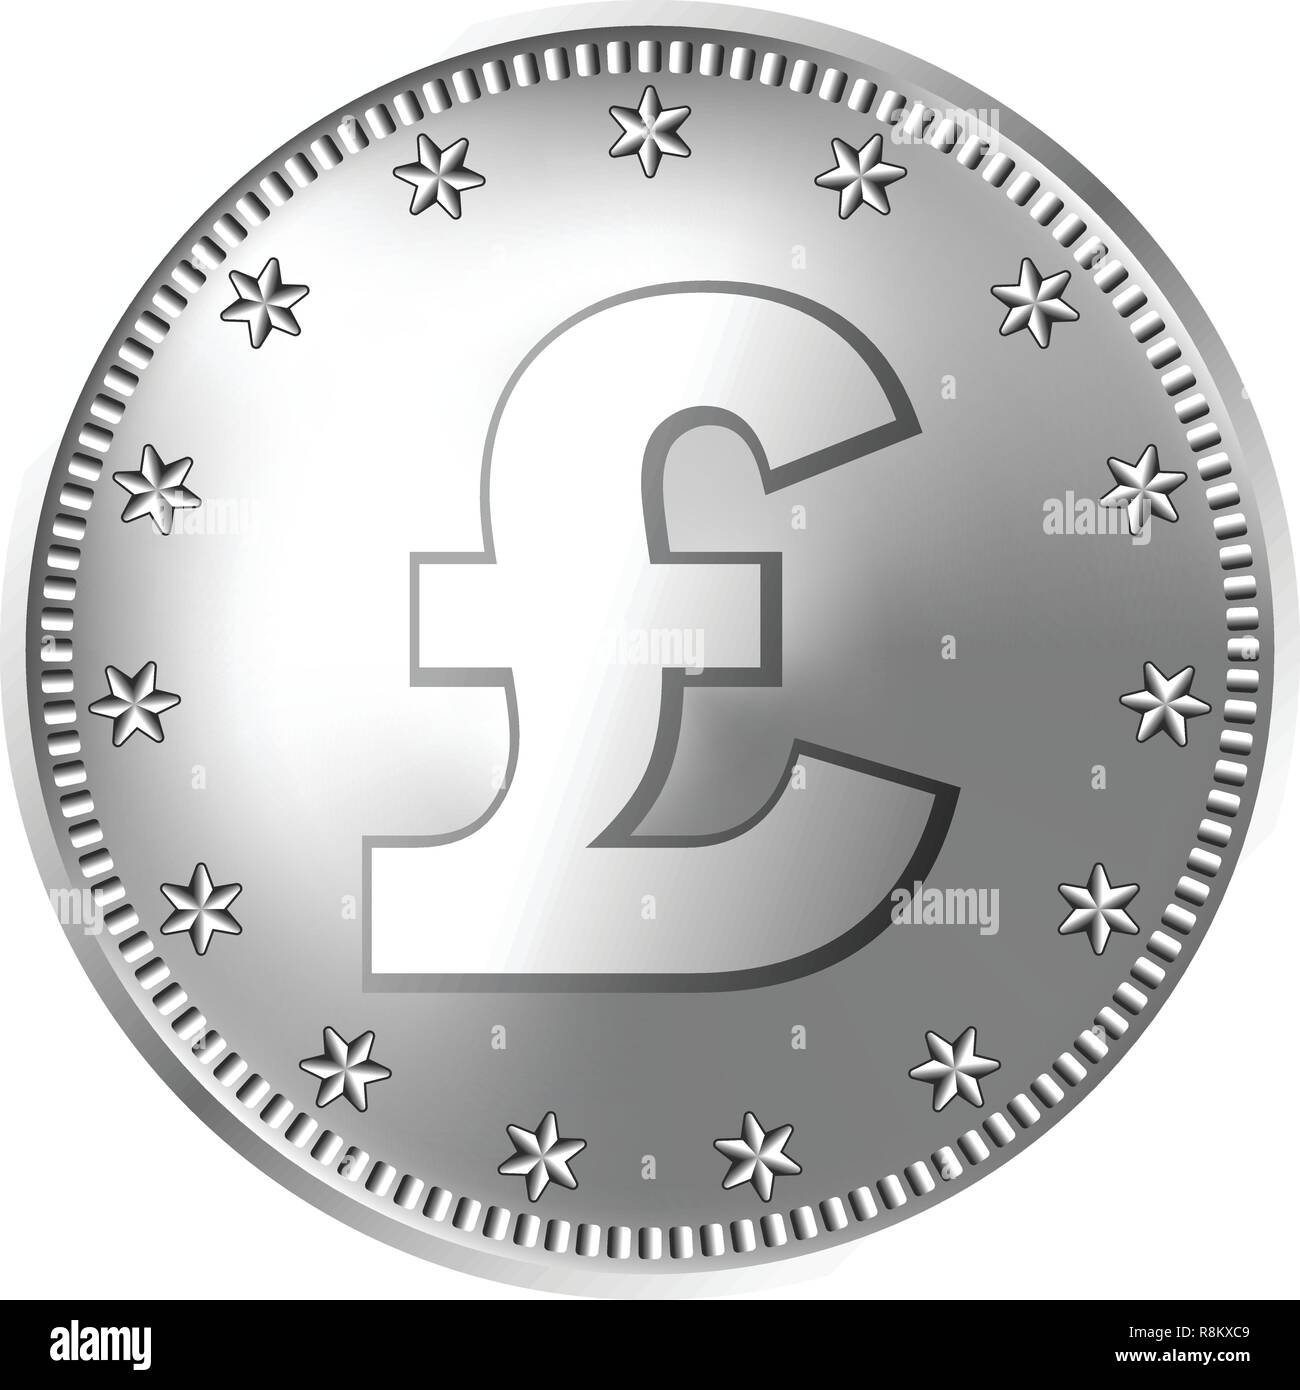 Großbritannien Pfund Sterling Silber münze, England Geld. Stock Vektor